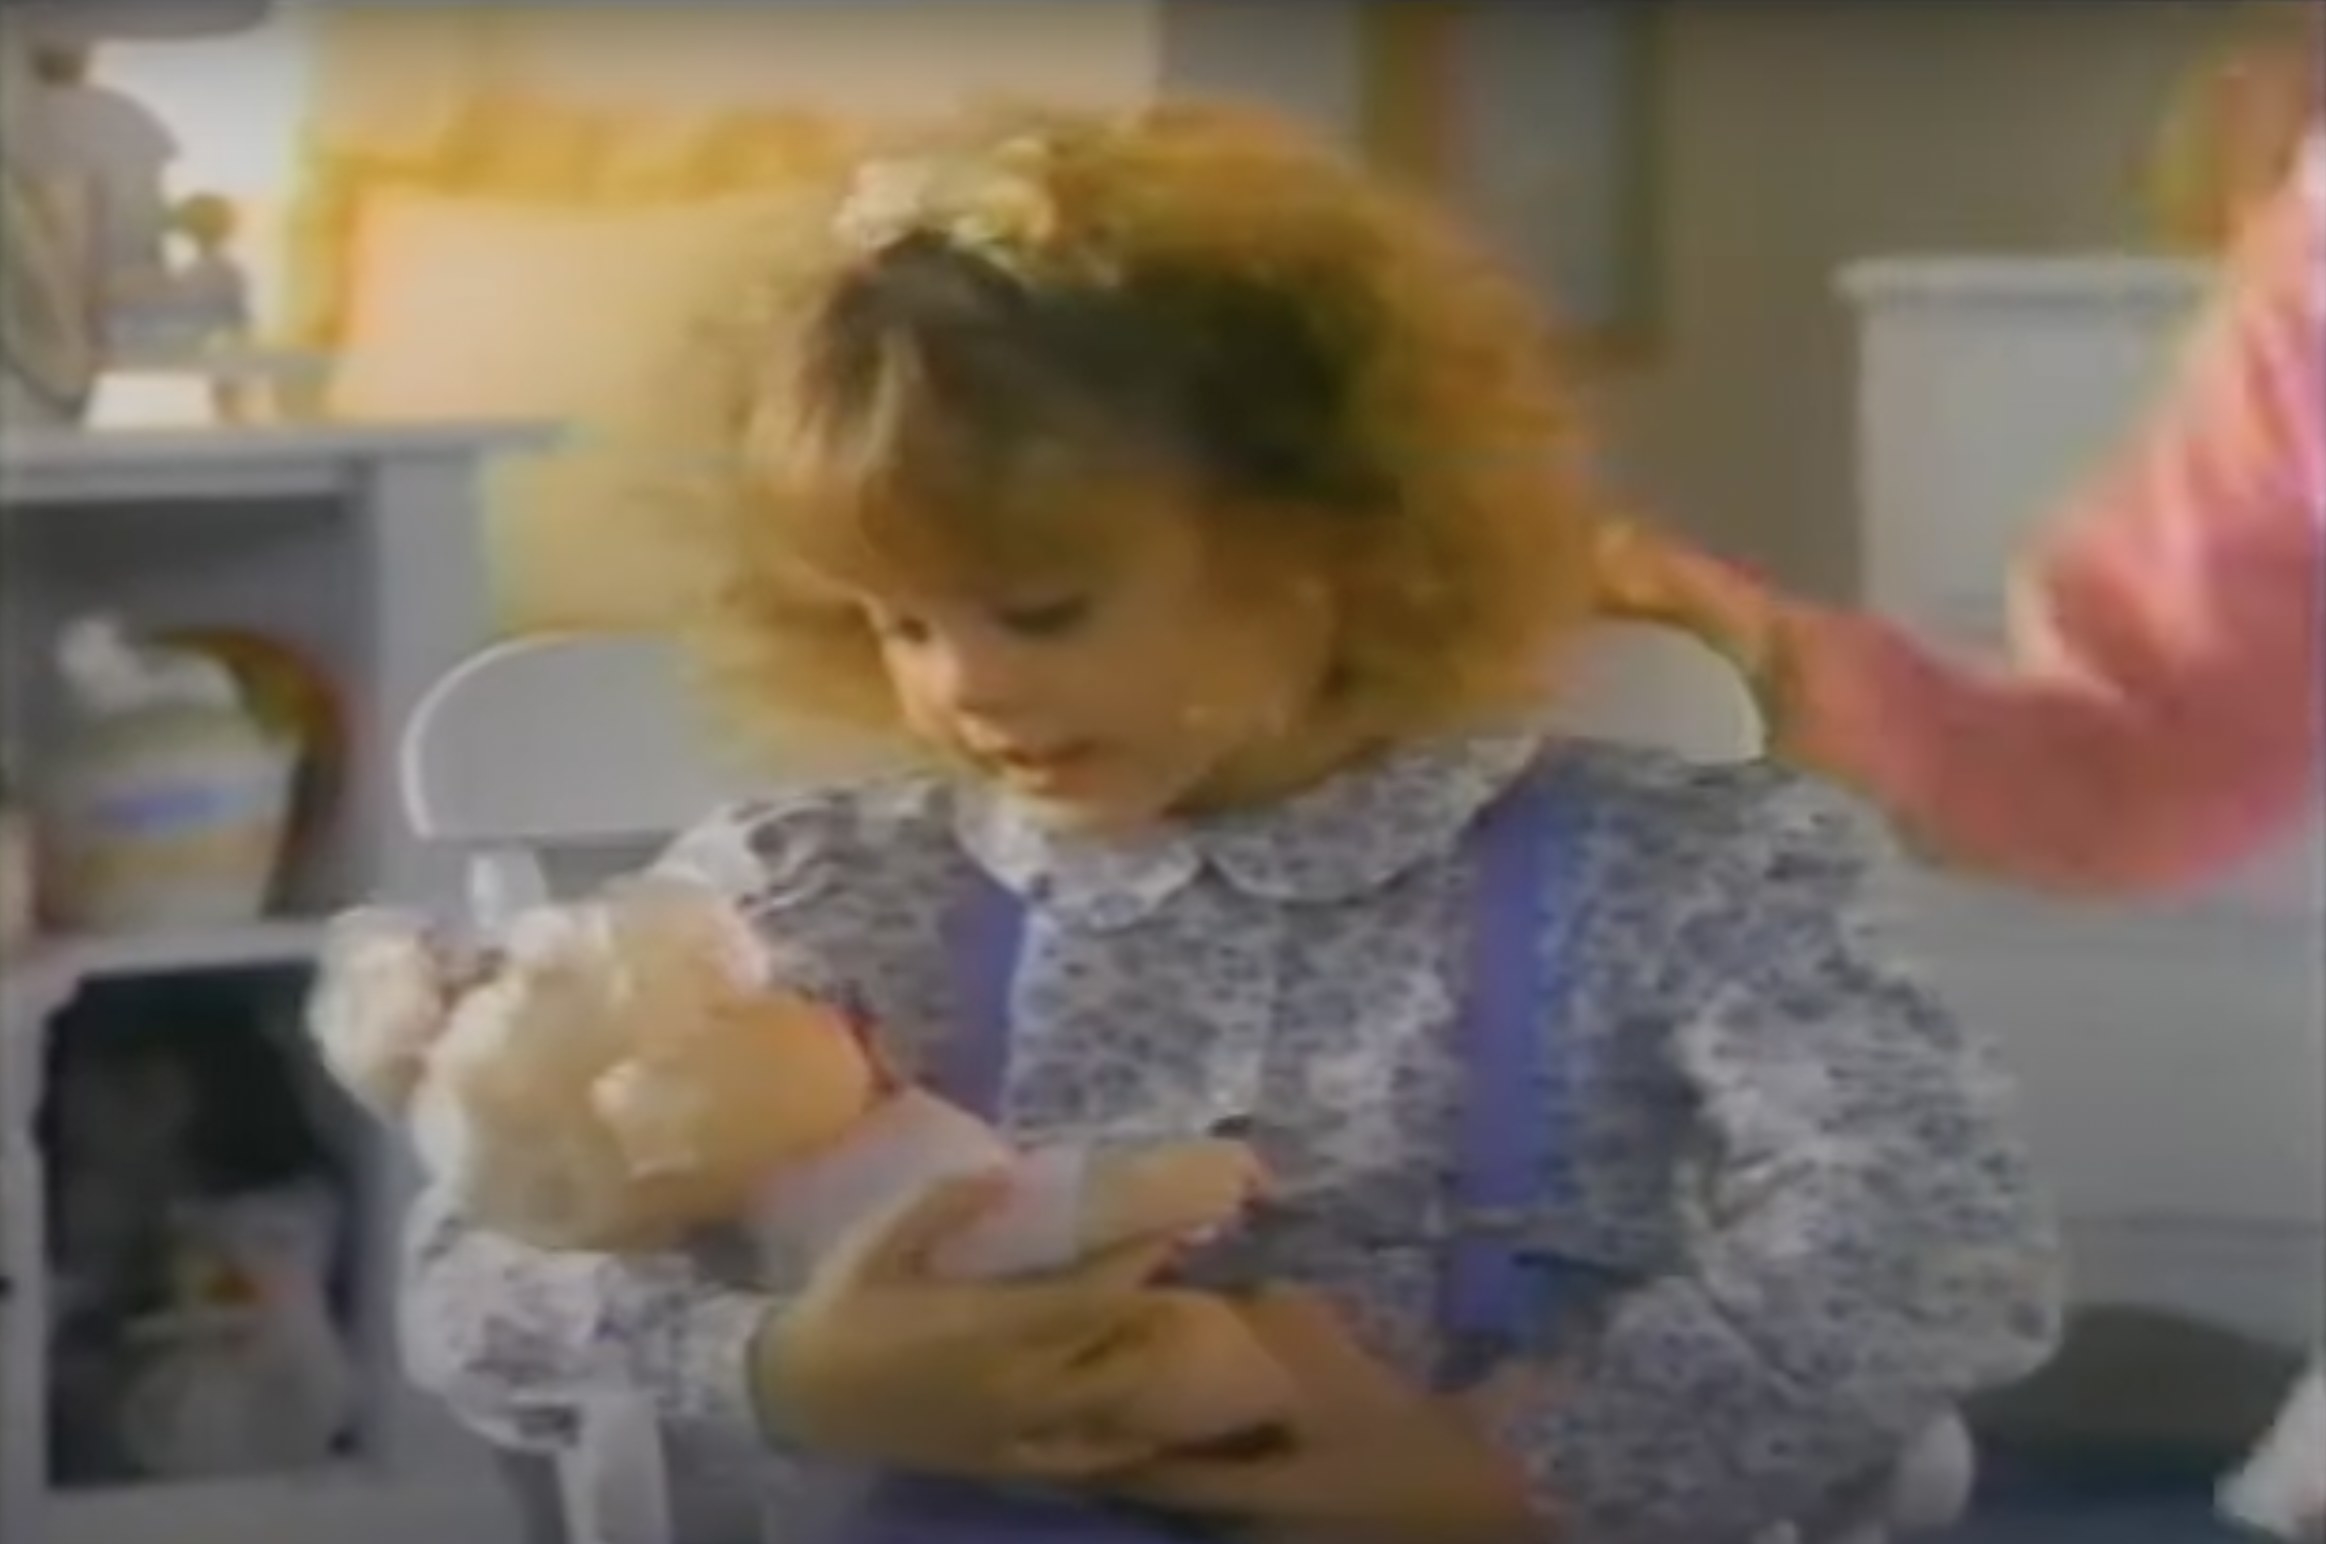 Kirsten Dunst cradling a baby doll